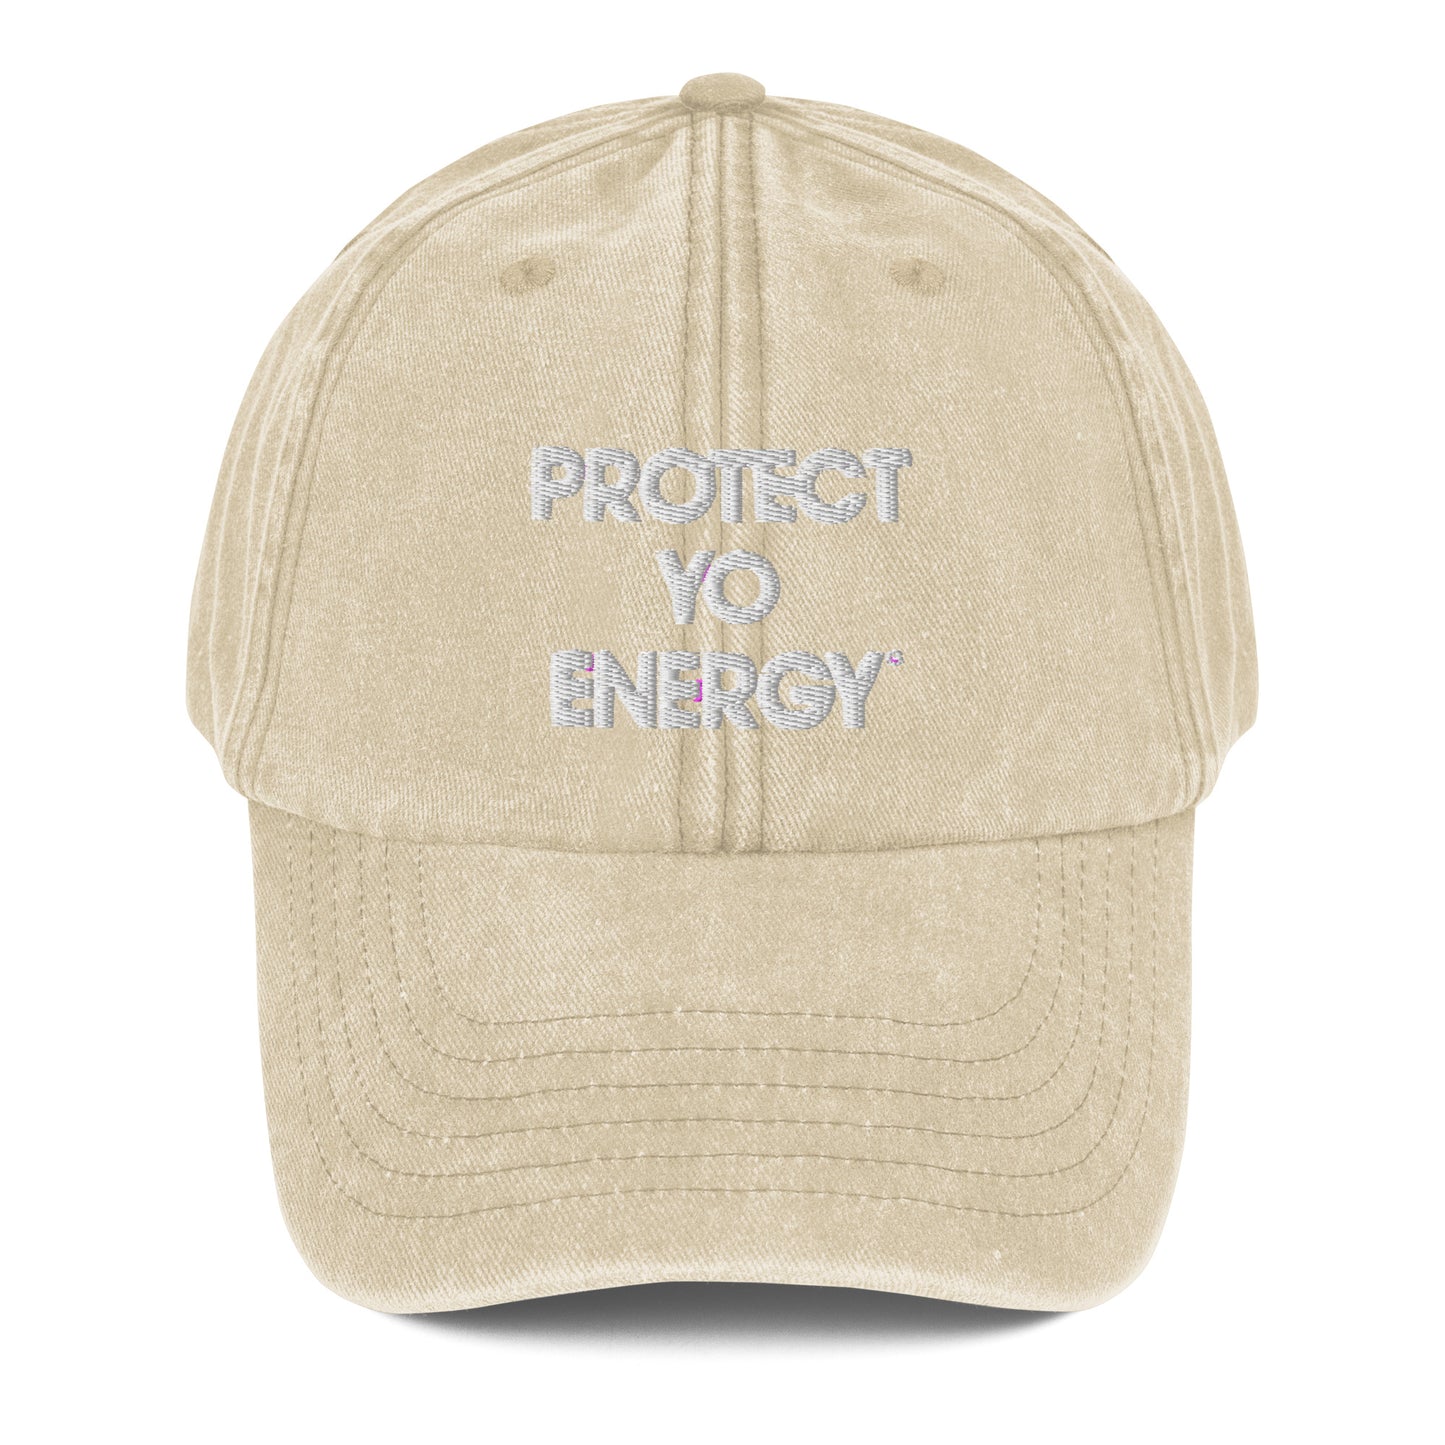 PYE Vintage Hat - PROTECT YO ENERGY 